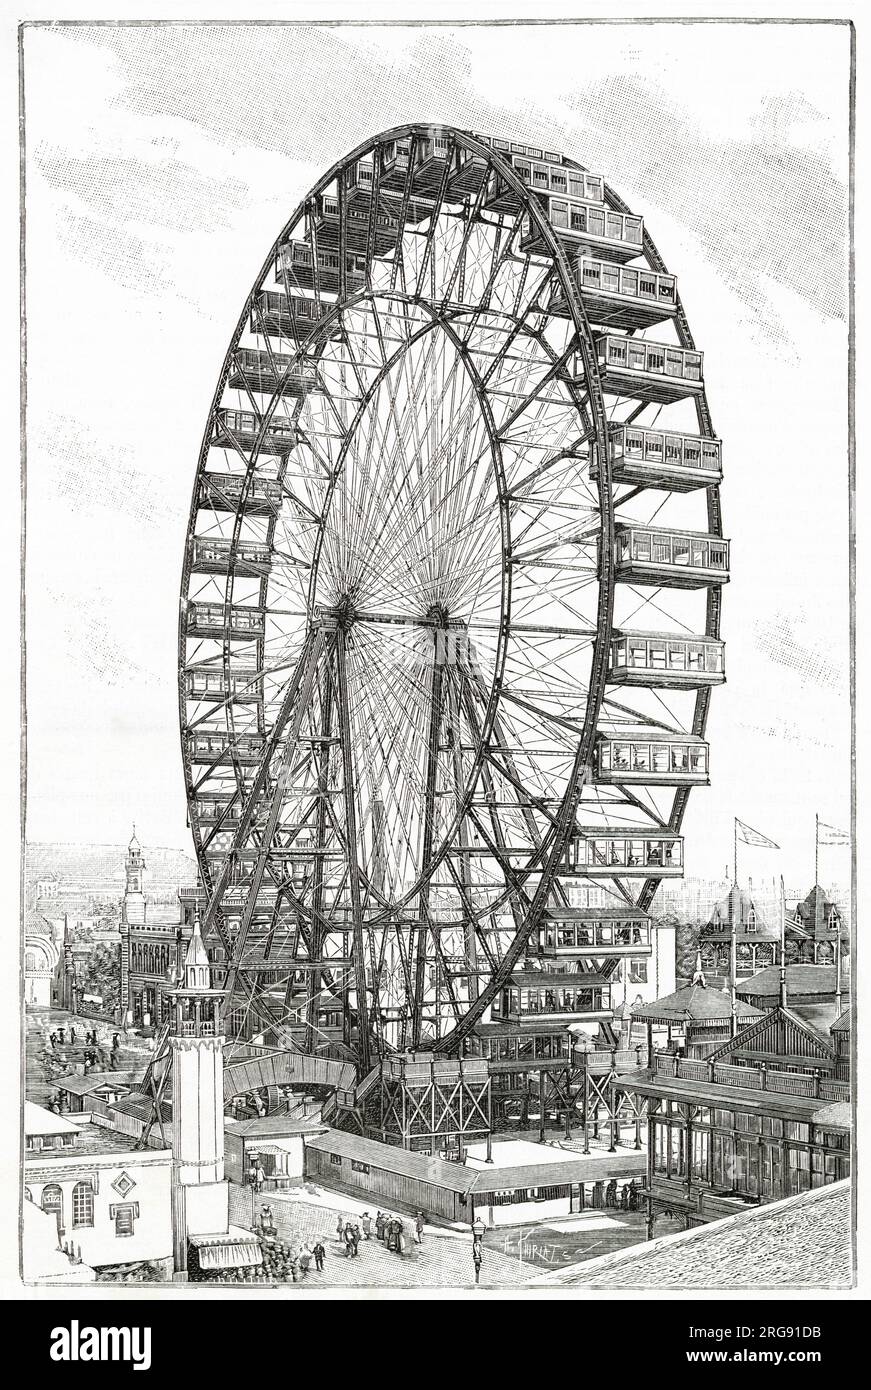 Attraktion auf der Chicago's World's Fair, entworfen und gebaut von George Washington Gale Ferris Jr. Das Riesenrad namens Chicago Wheel hatte 36 Pendel-Autos mit jeweils 40 Passagieren und 1.440 Personen auf seiner Höhe. Stockfoto